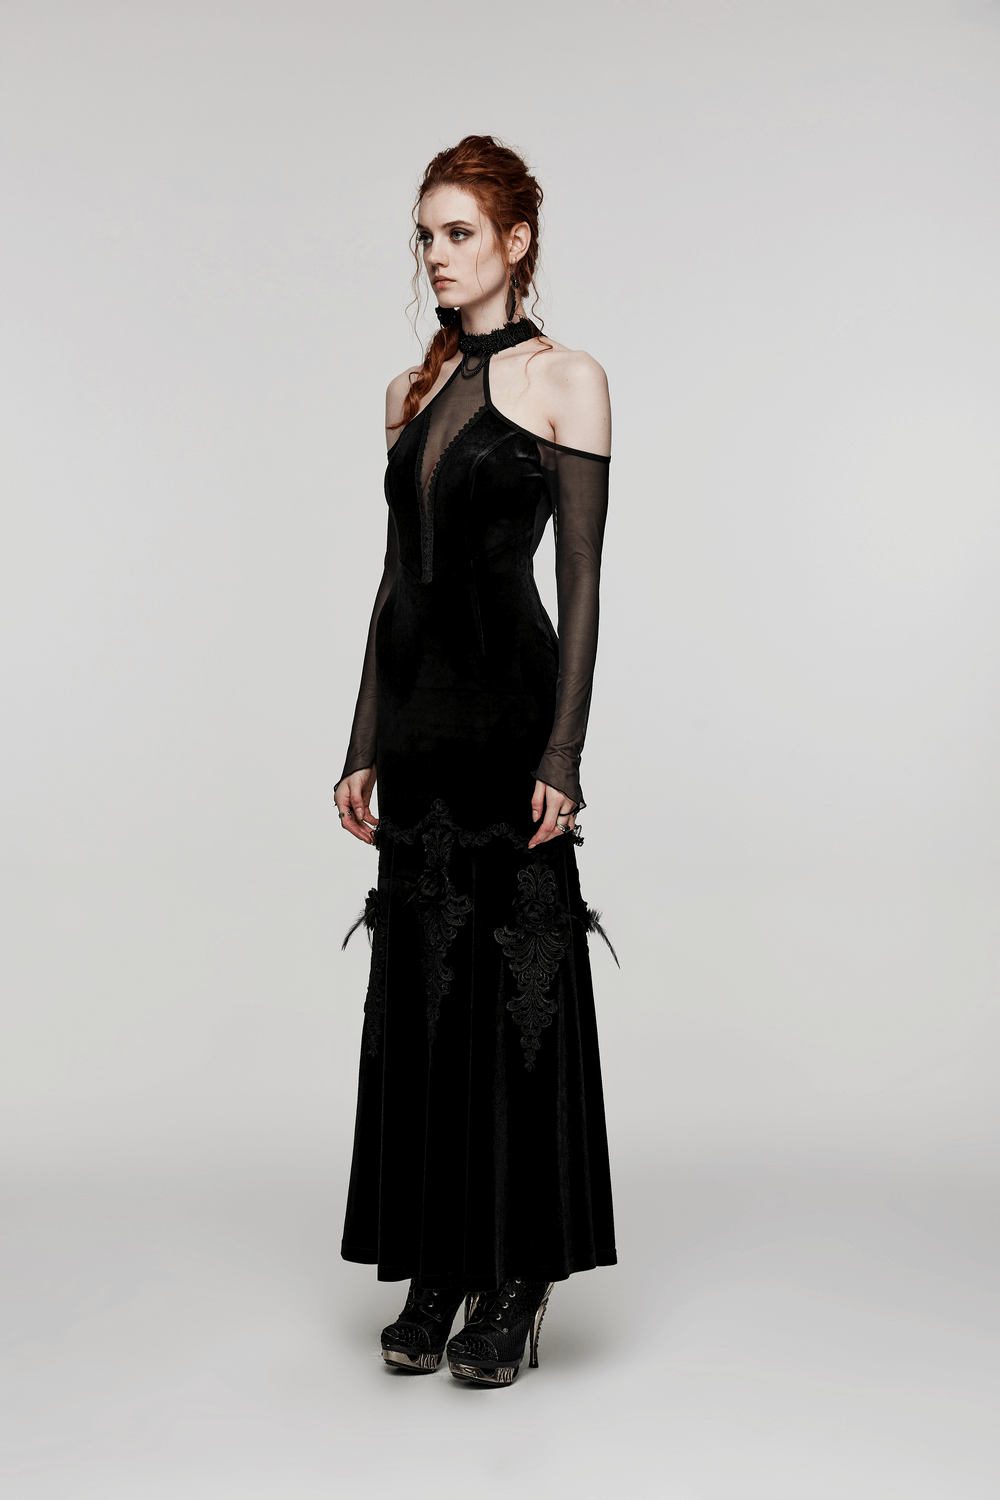 Gothic Elegance Velvet Gown Women's Long Dress